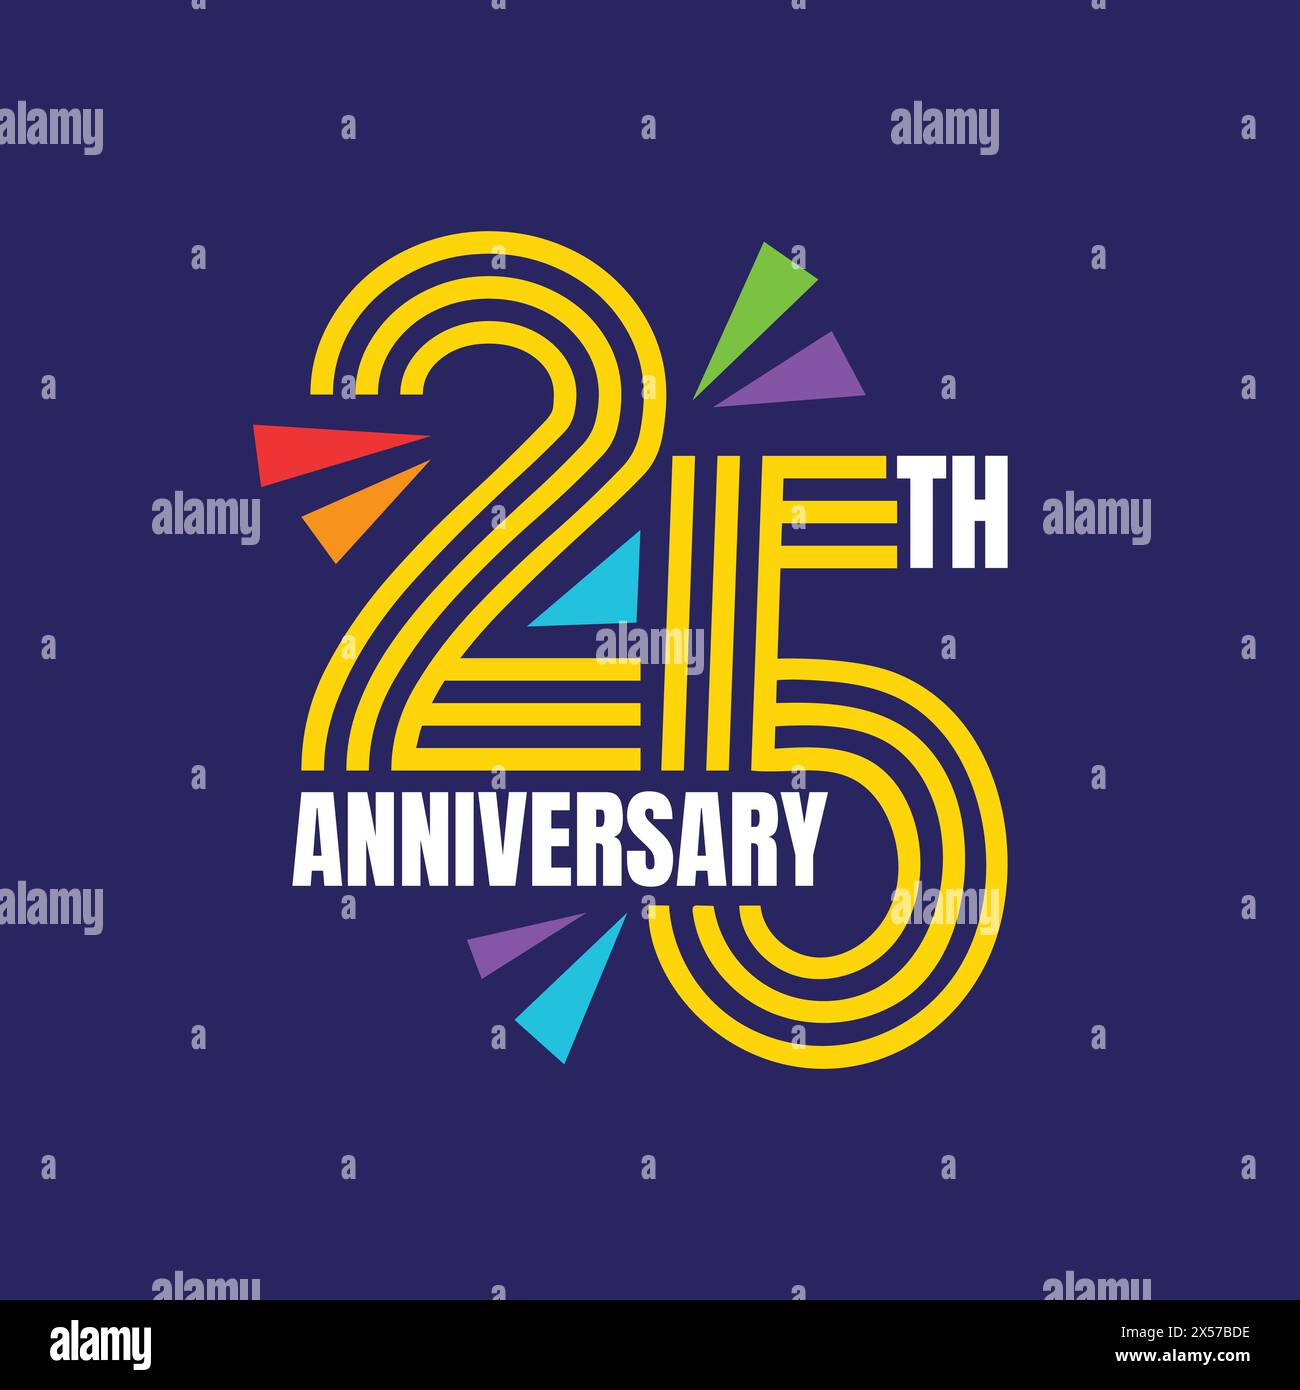 Logo zum 25. Jahrestag mit goldenem Text und Festelementen auf blauem Hintergrund. 25 Jahre Geburtstagsvorlage, Abzeichen, Aufkleber, Poster, Banner Stock Vektor